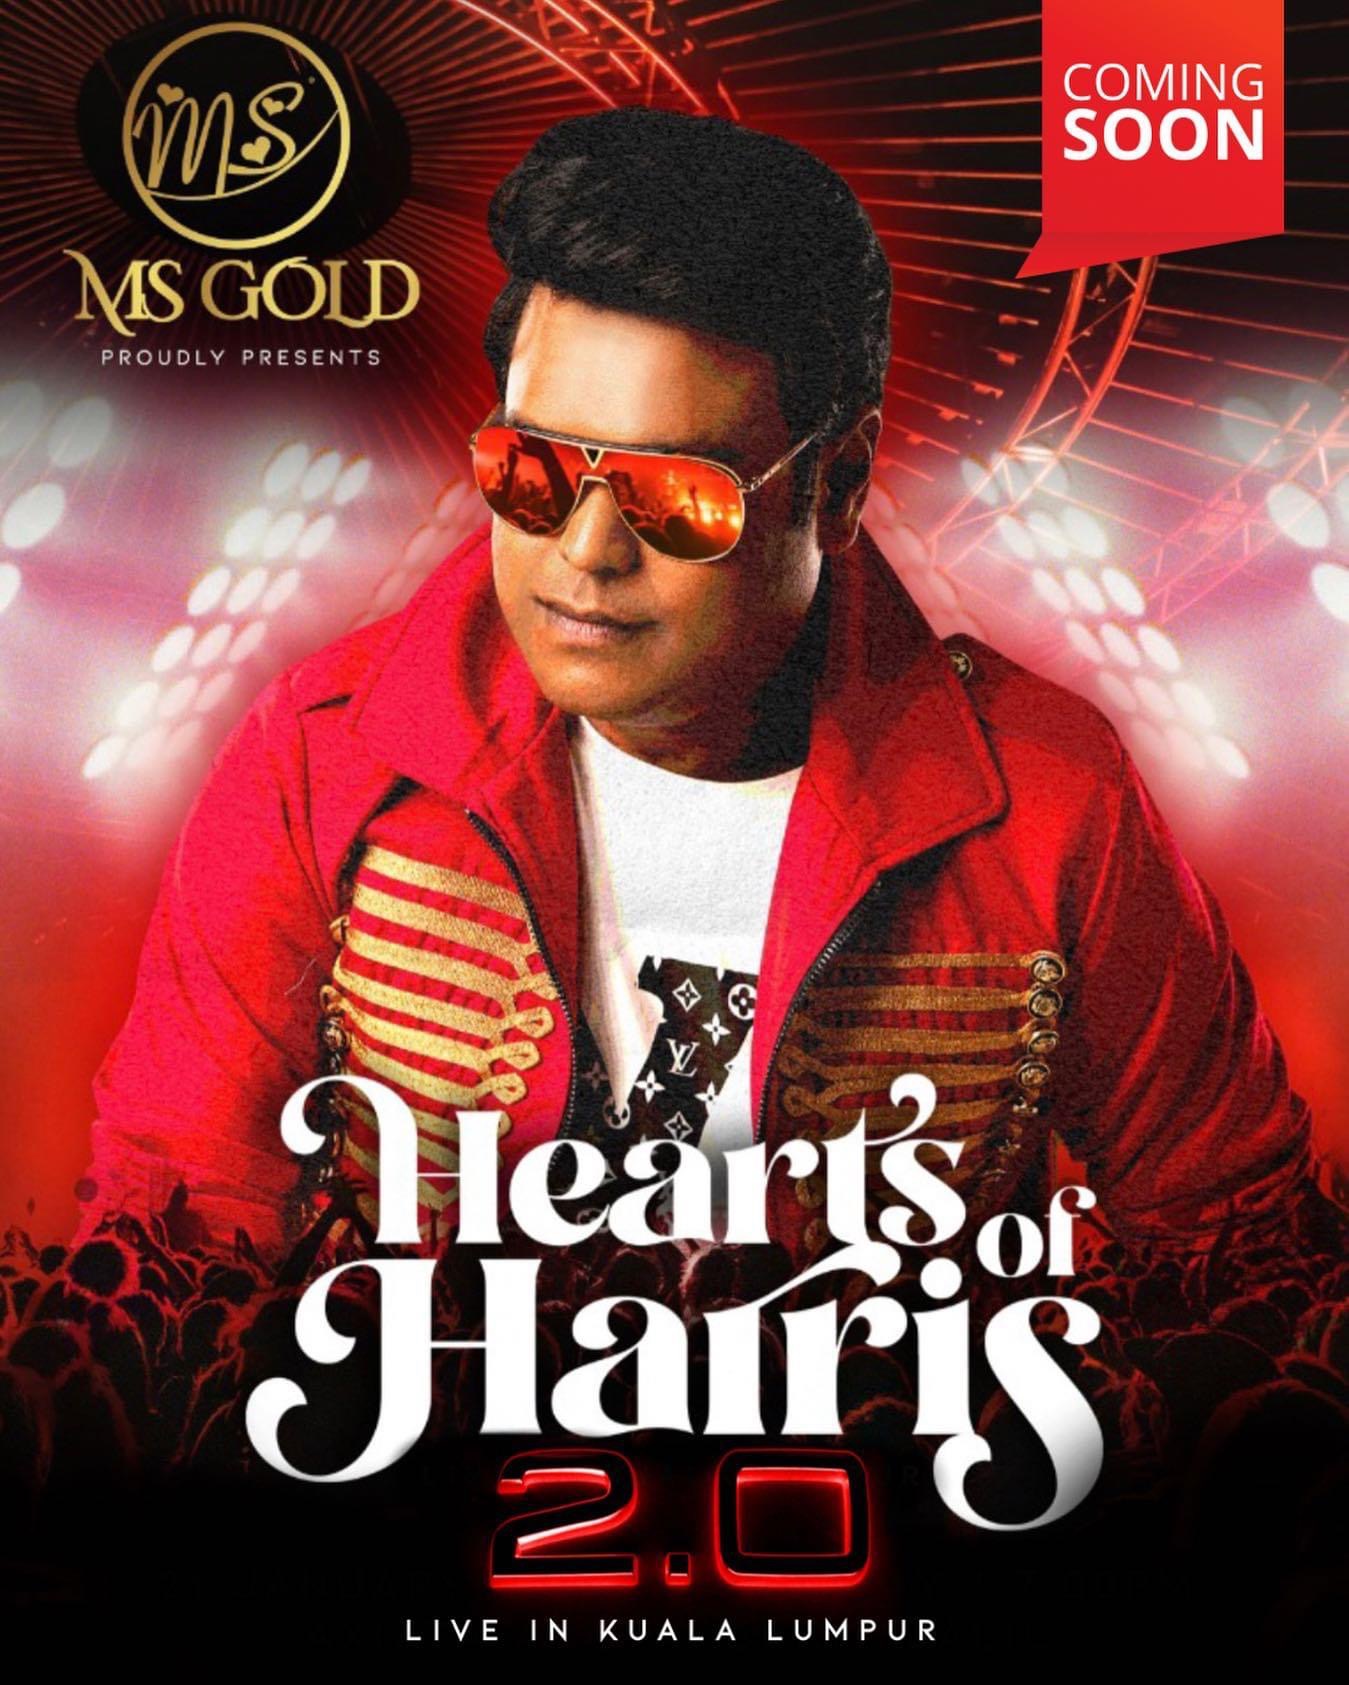 Konsert Hearts of Harris versi 2.0 bakal kembali gegar peminat Malaysia